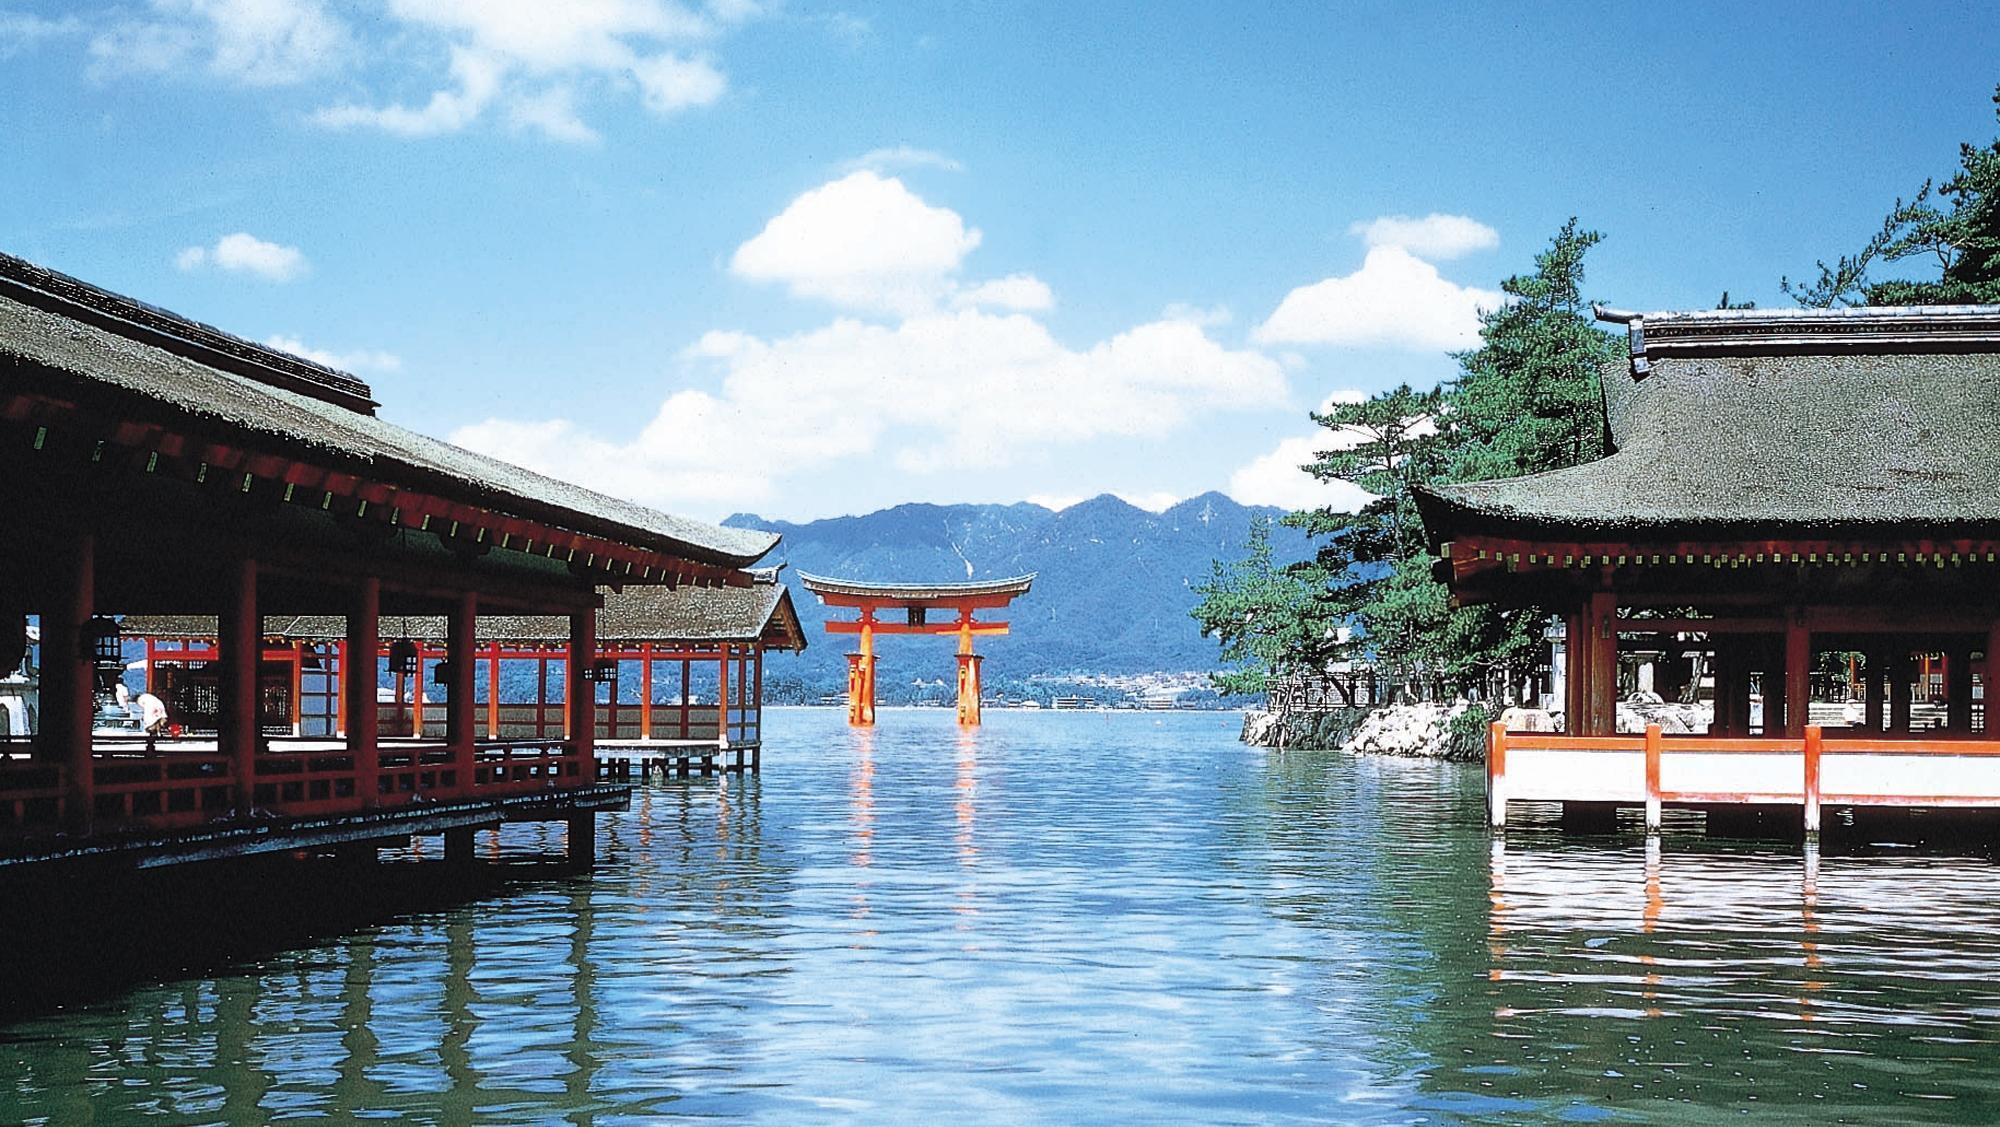 世界遺産「宮島 厳島神社」観光に便利なロケーション※大鳥居は大規模な修繕をおこなっております